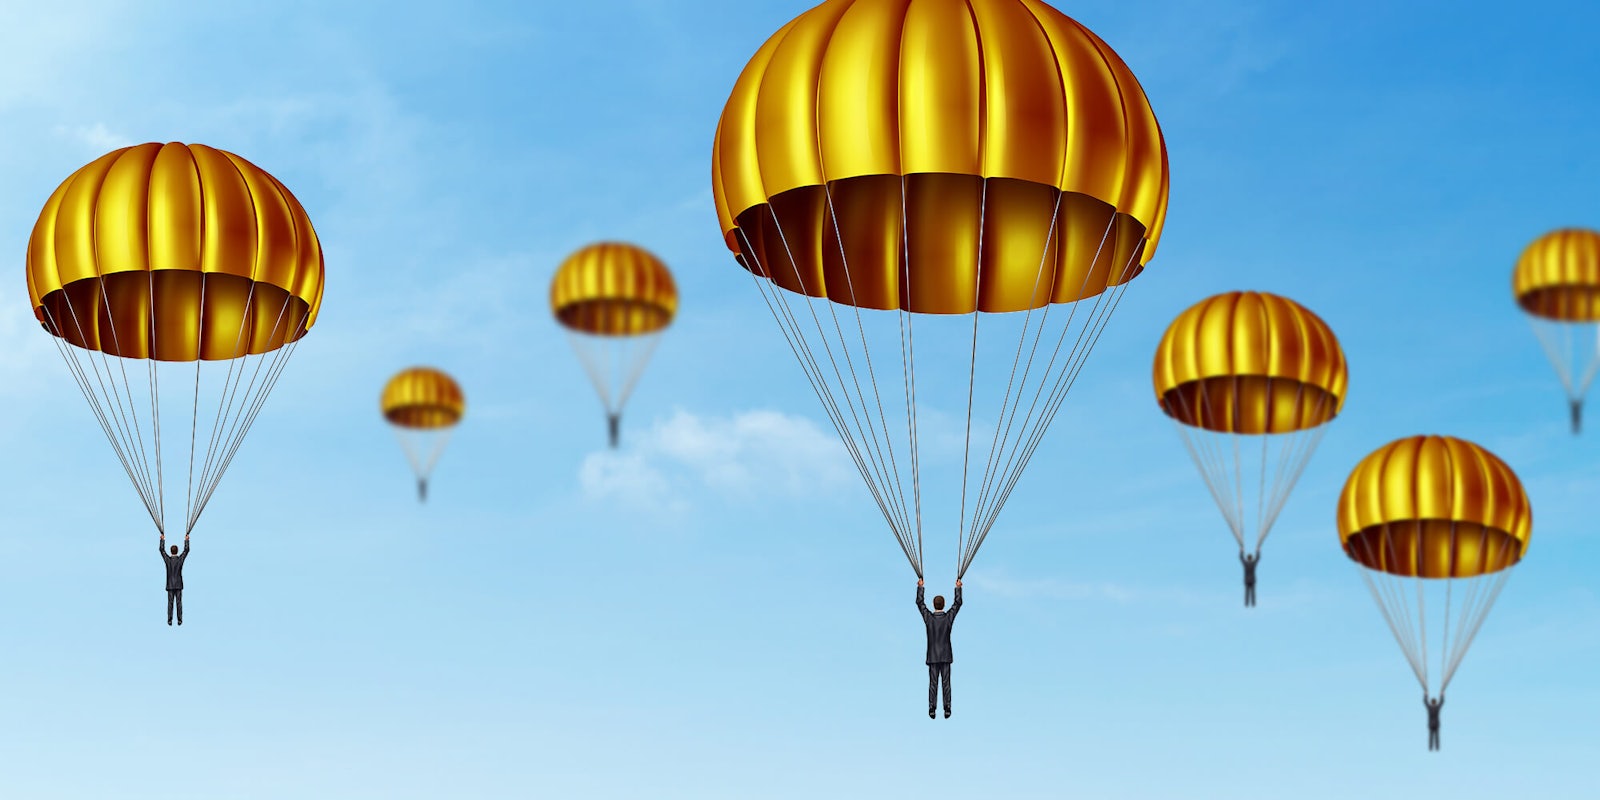 CEOs using golden parachutes